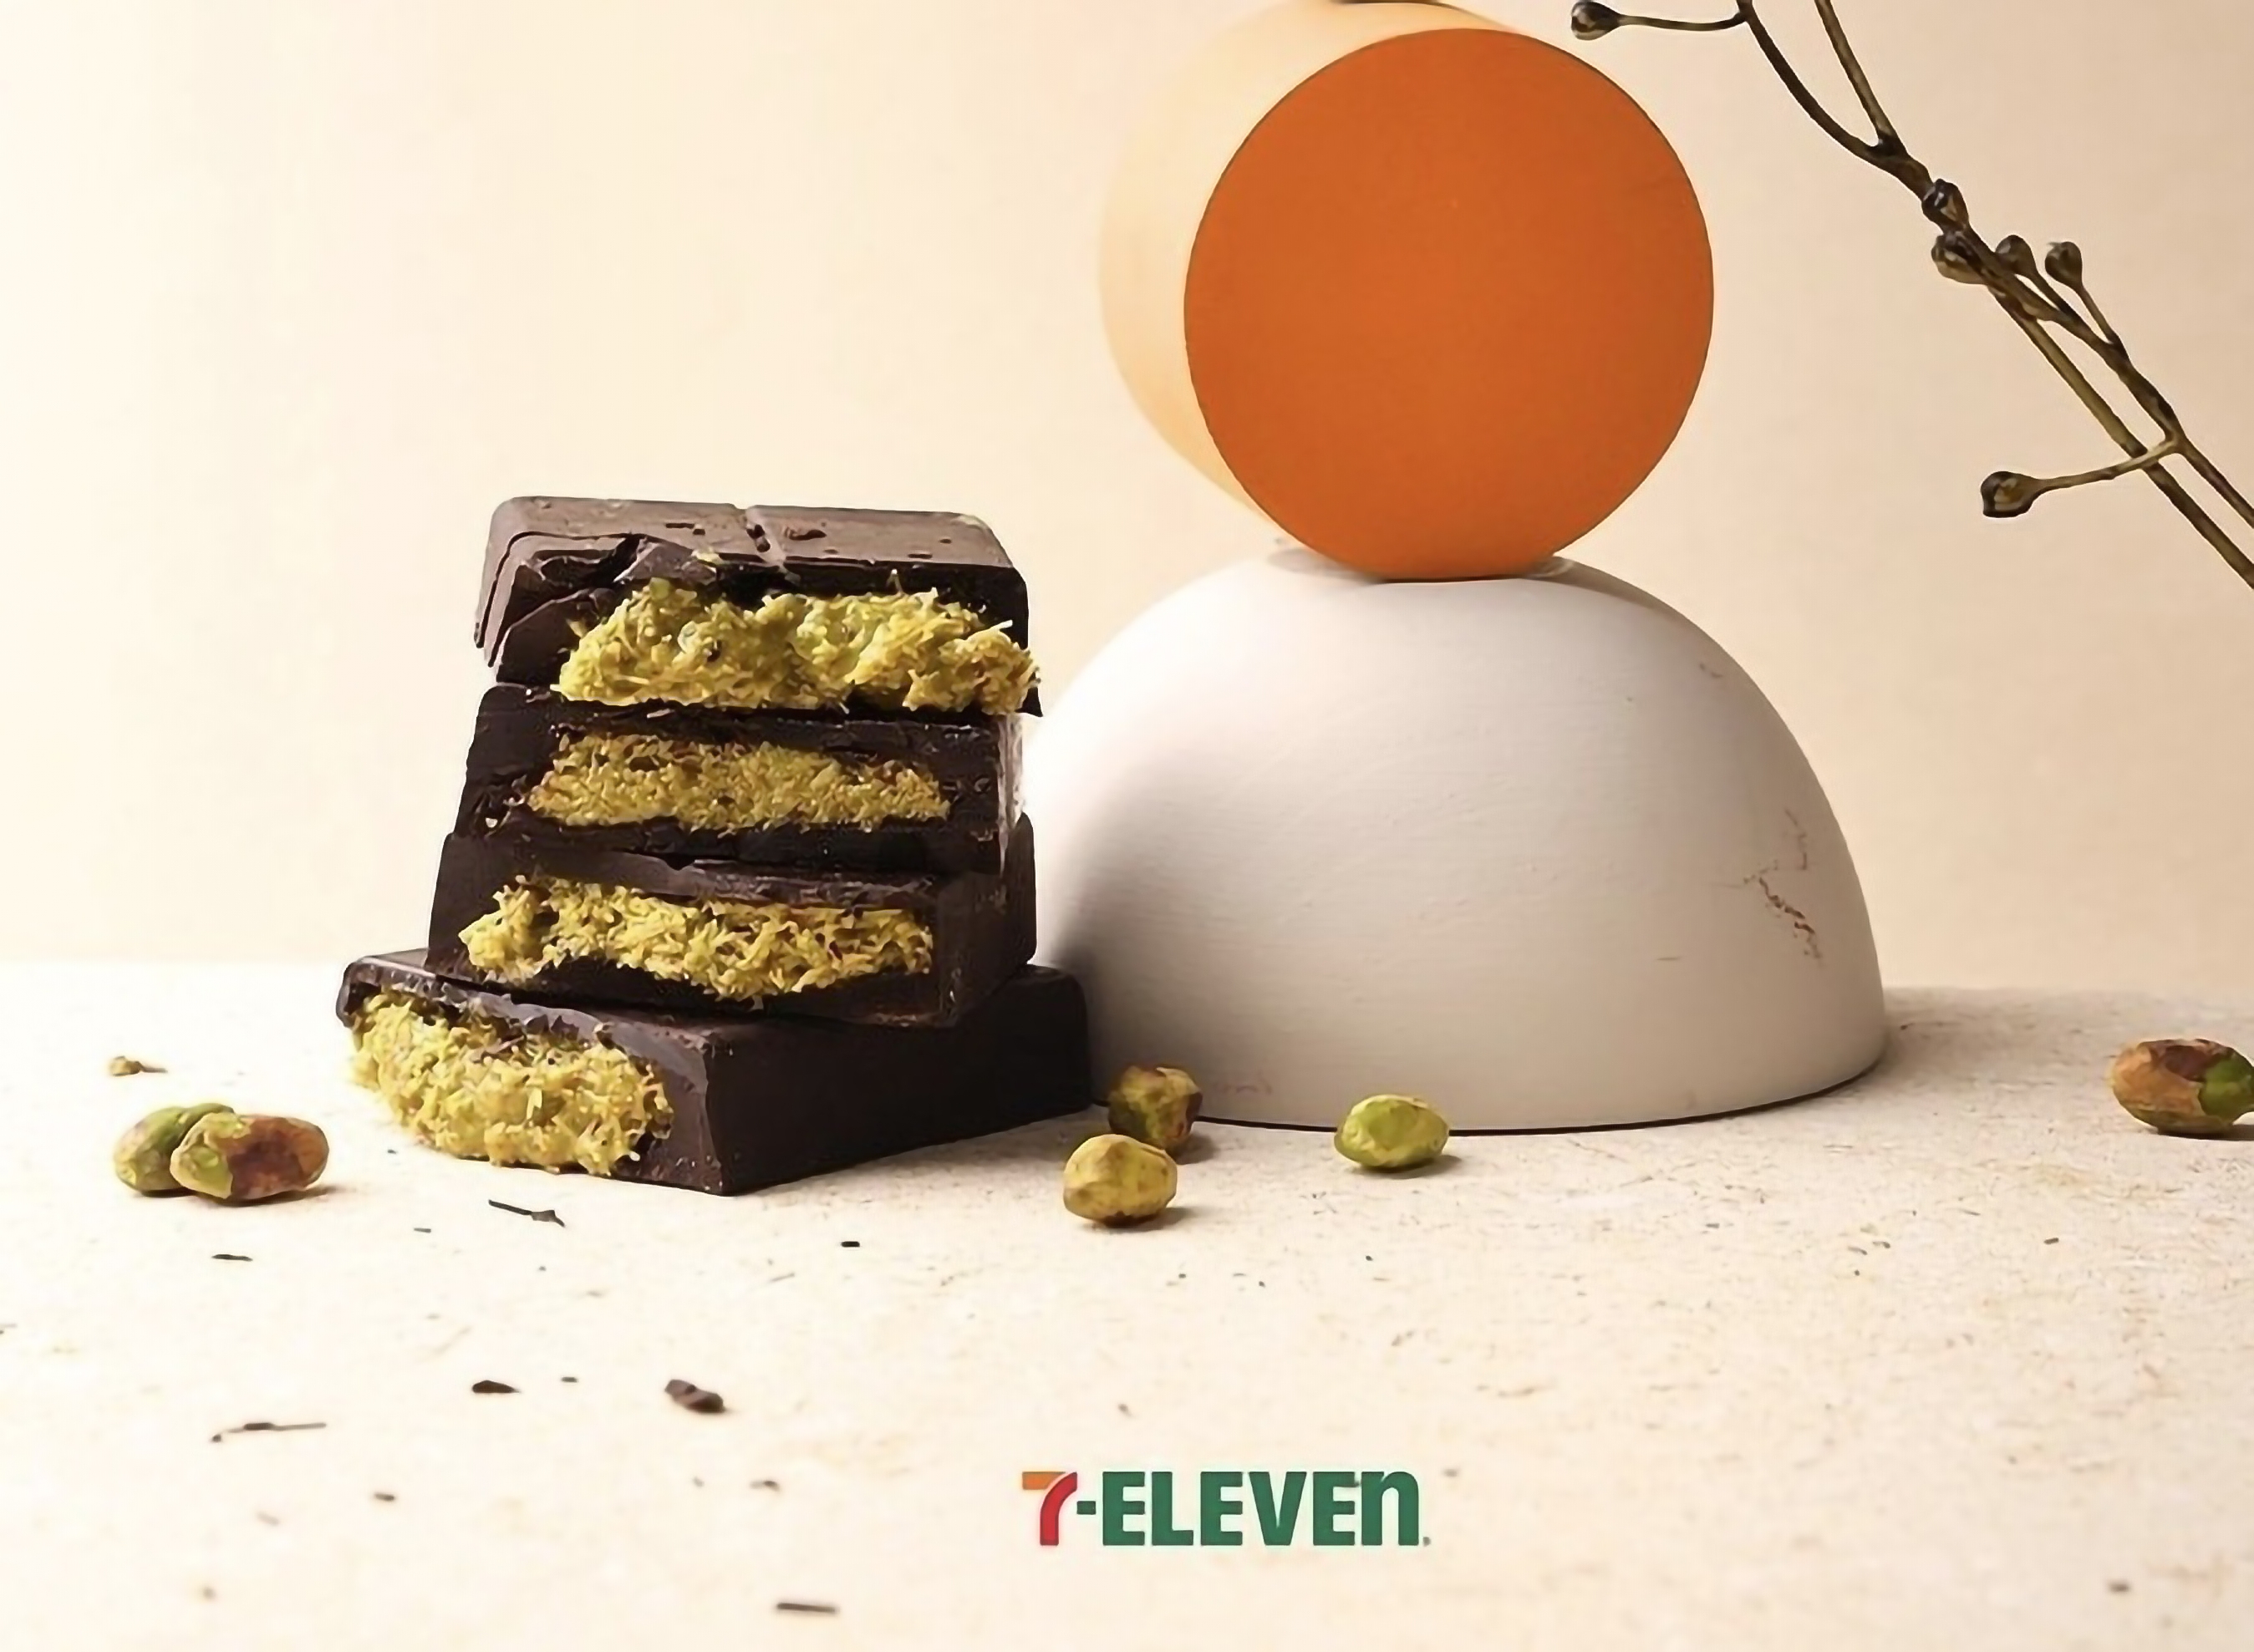 세븐일레븐이 '두바이 초콜릿' 정식 출시를 앞두고 사전 예약 판매에 돌입한다. /사진제공=세븐일레븐 